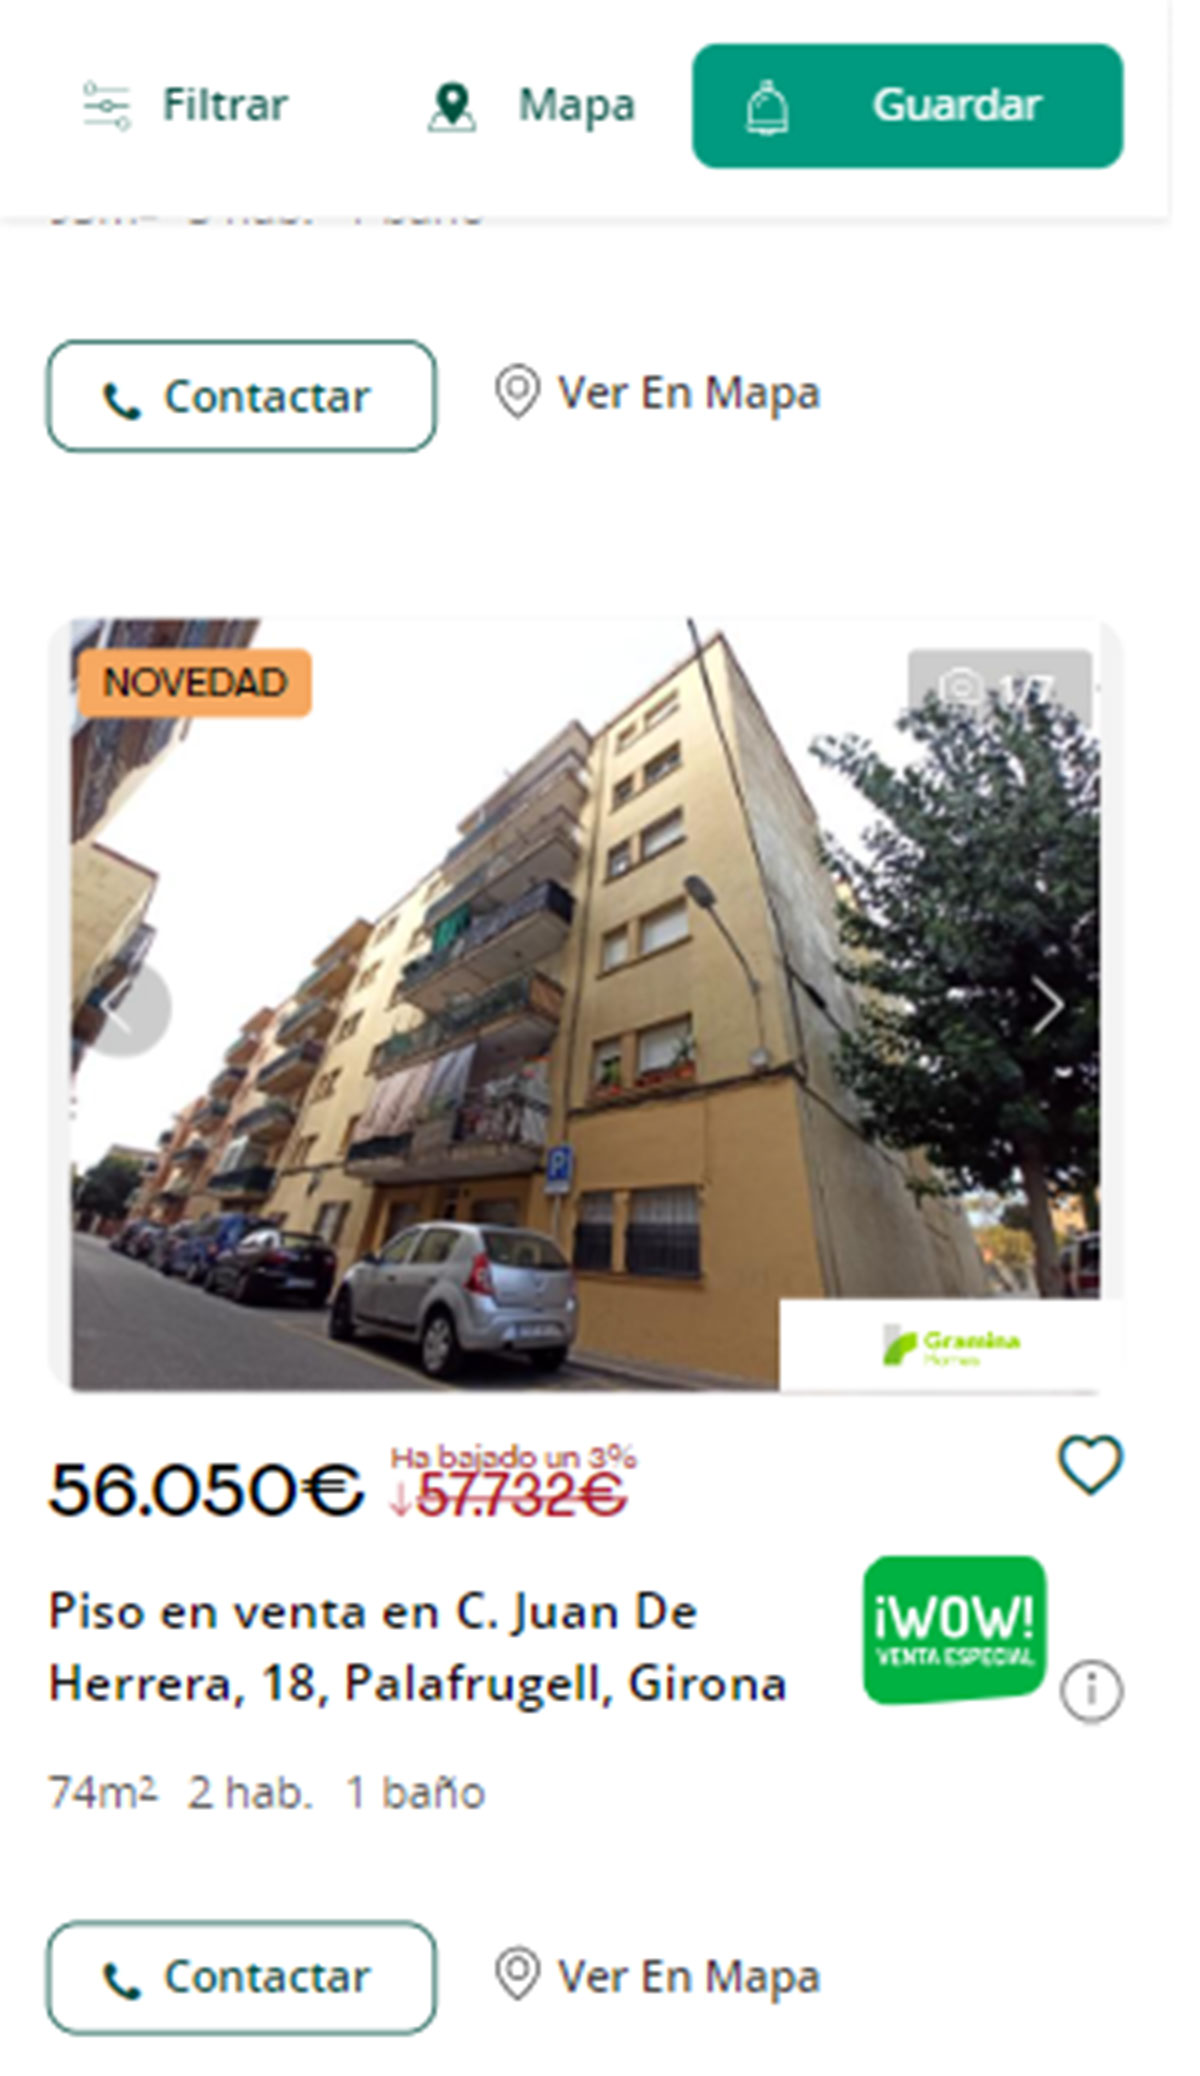 Piso en Girona por 56.100 euros